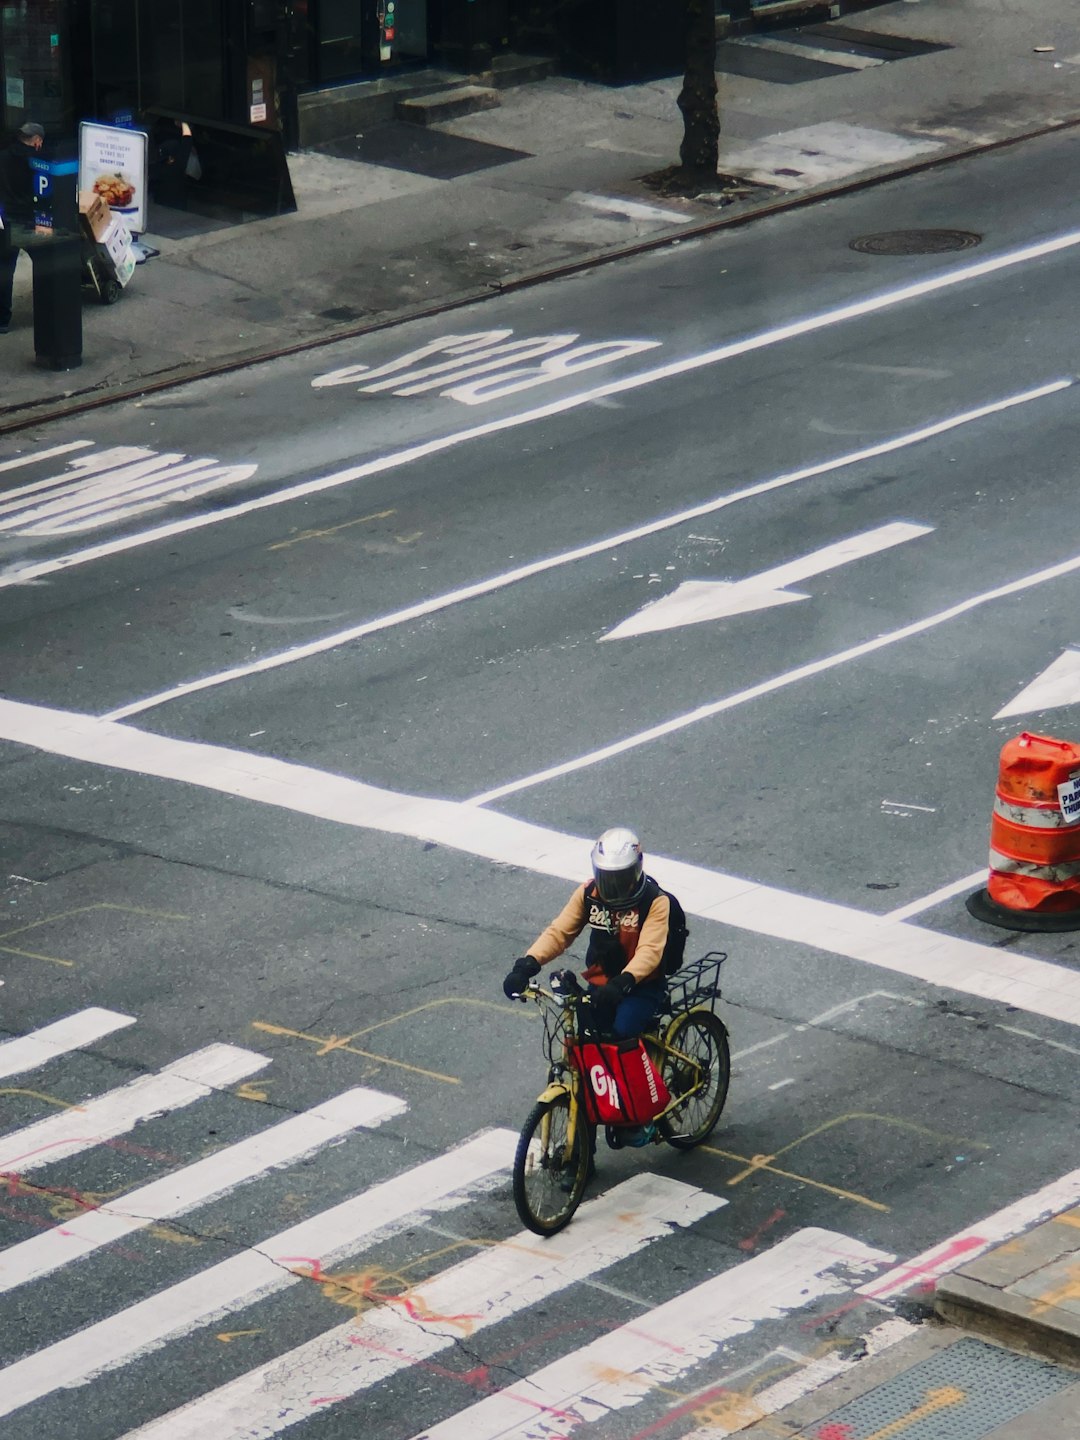 man in black jacket riding bicycle on pedestrian lane during daytime